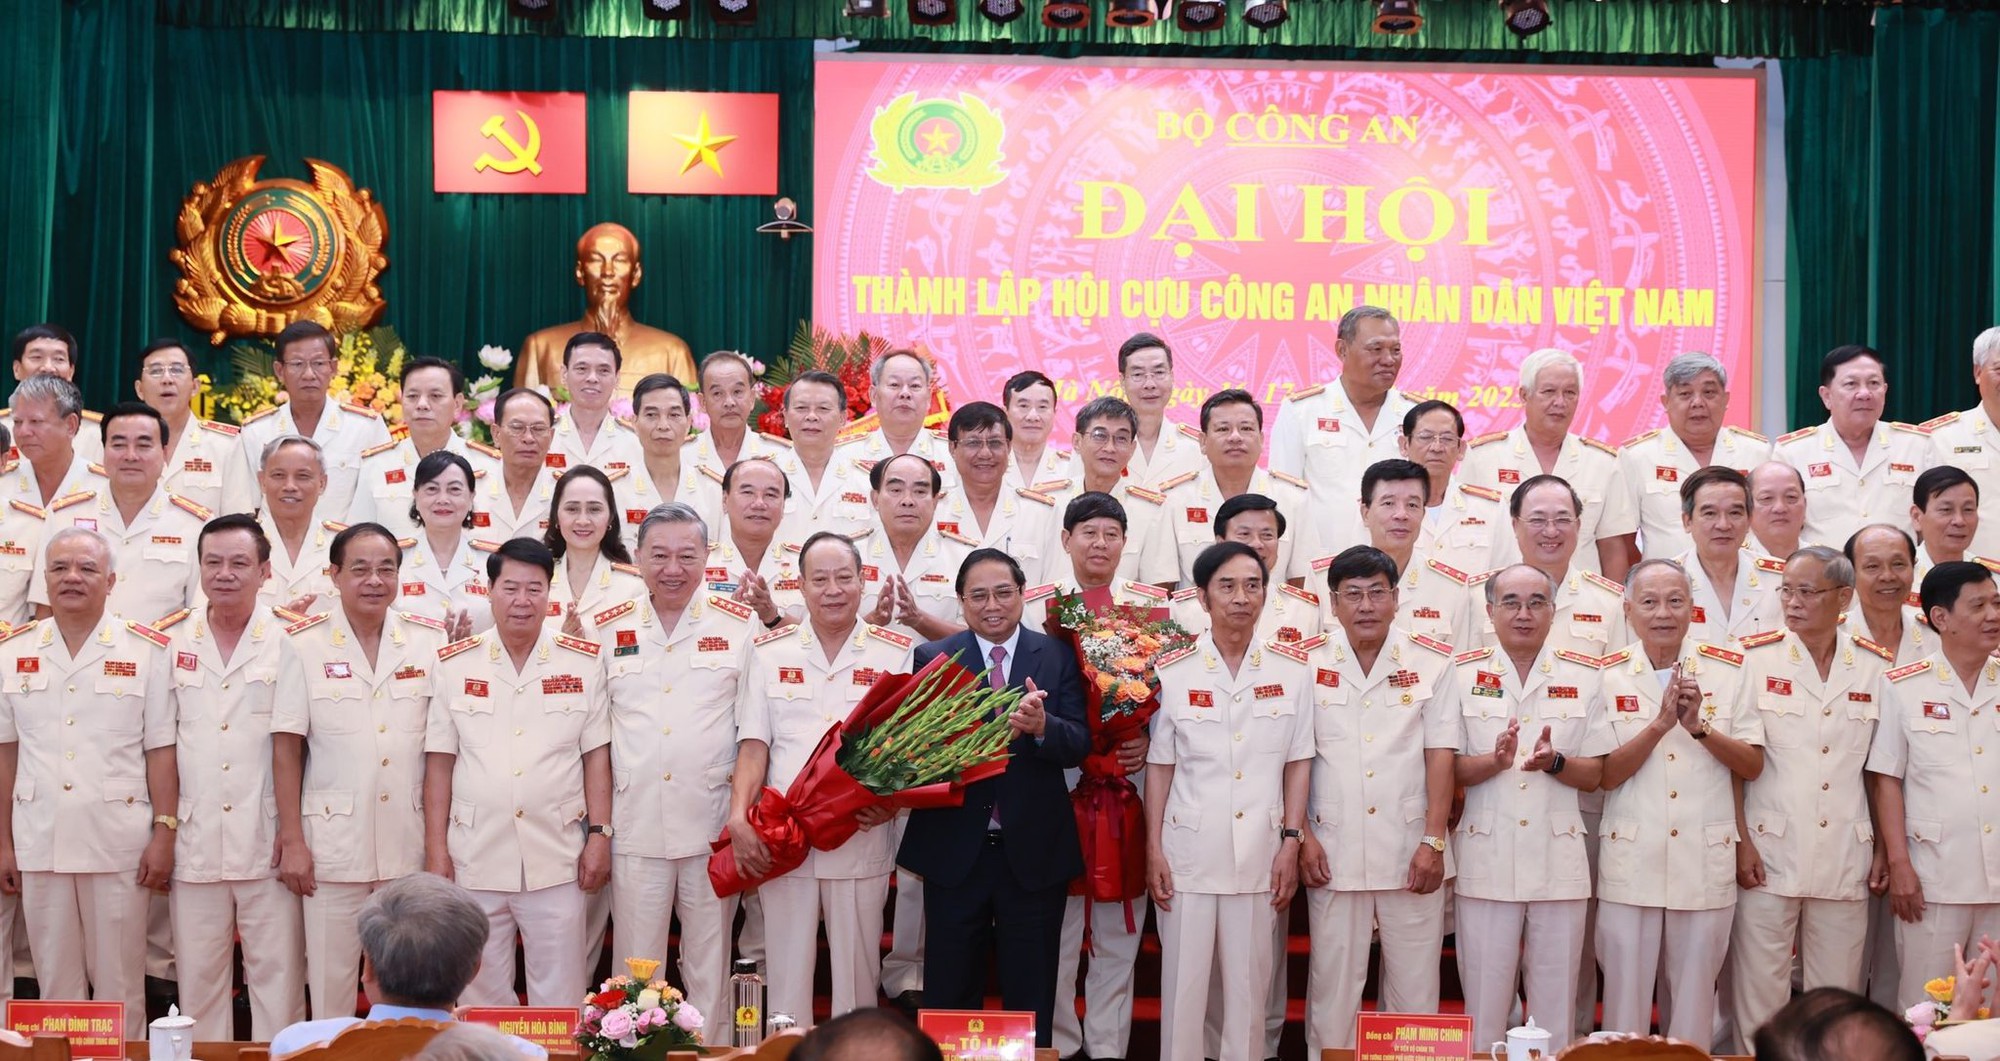 Thượng Tướng Lê Quý Vương được Bầu Làm Chủ Tịch Hội Cựu Cand Việt Nam 